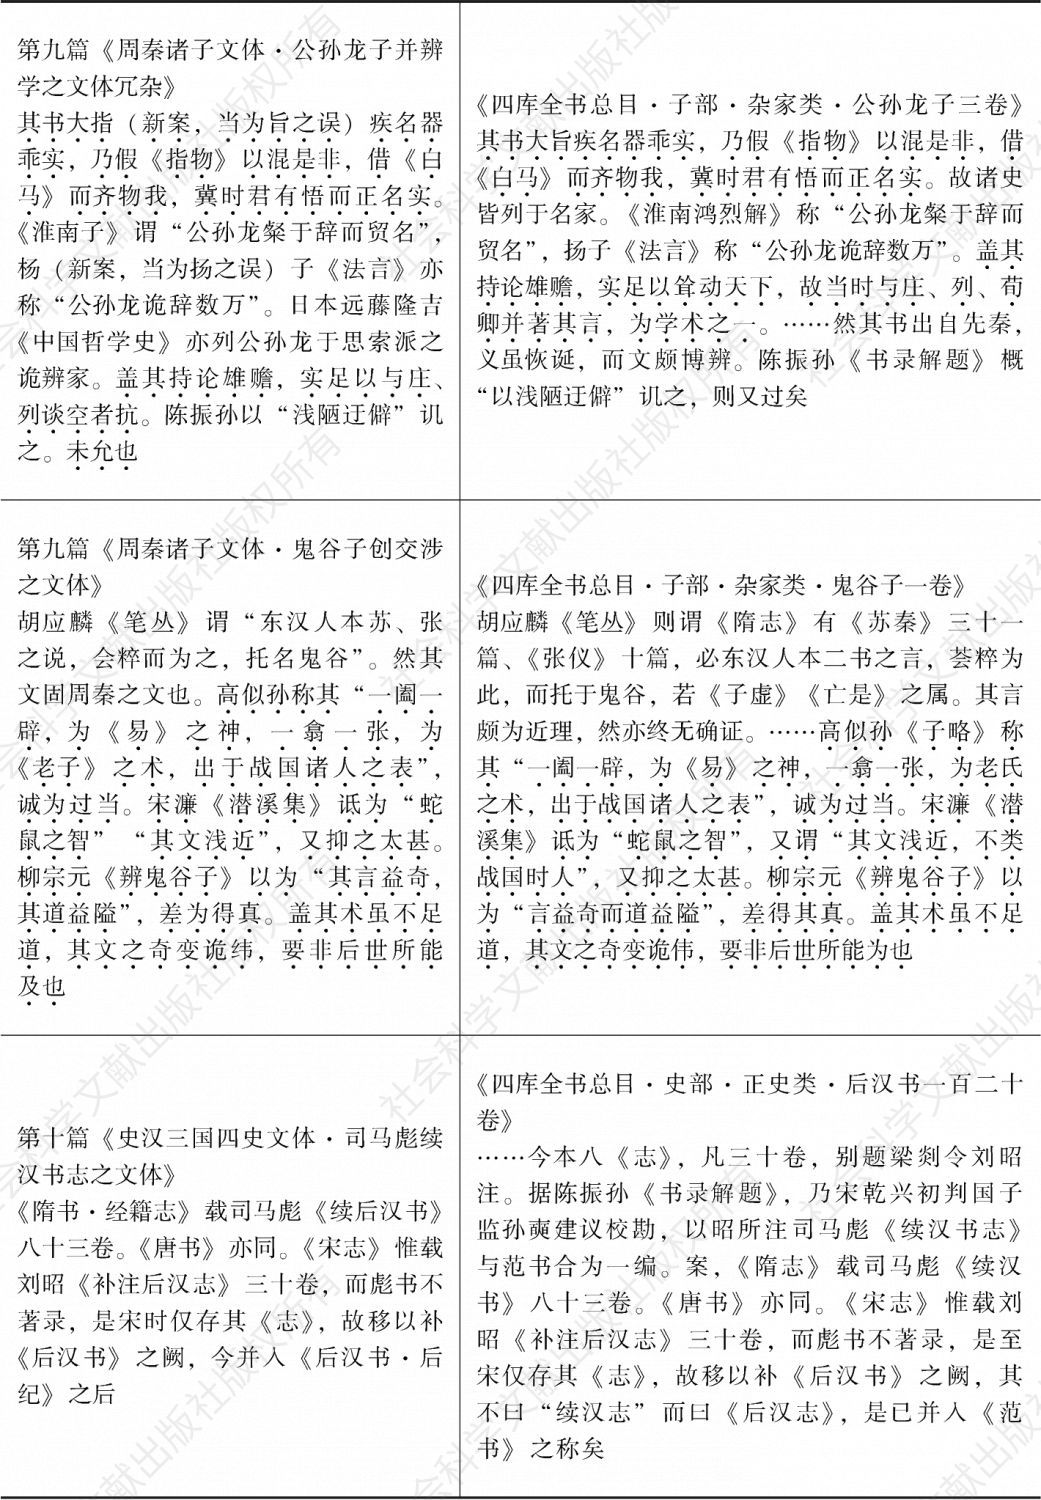 表2-1 林传甲《中国文学史》与《四库全书总目》之比较-续表1